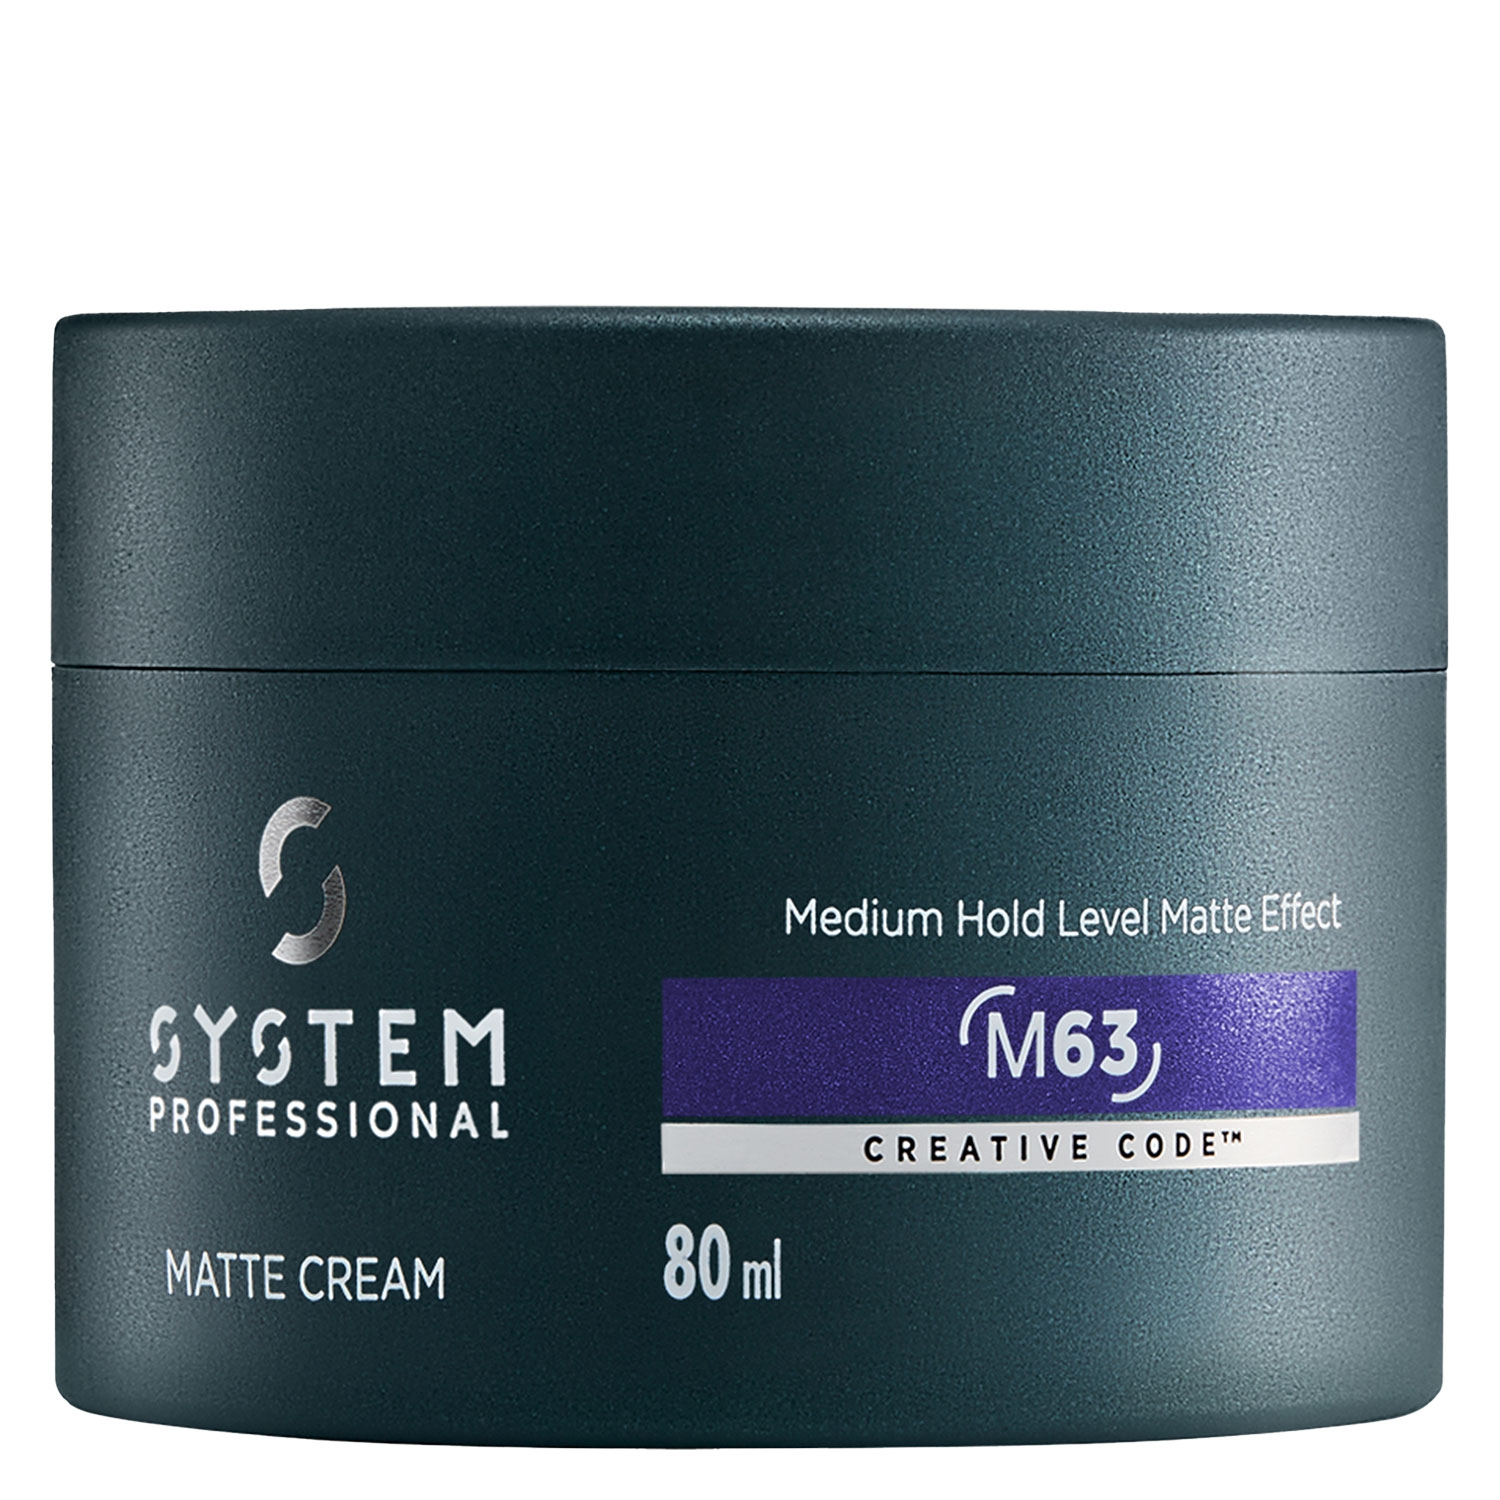 Produktbild von System Professional Man - Matte Cream